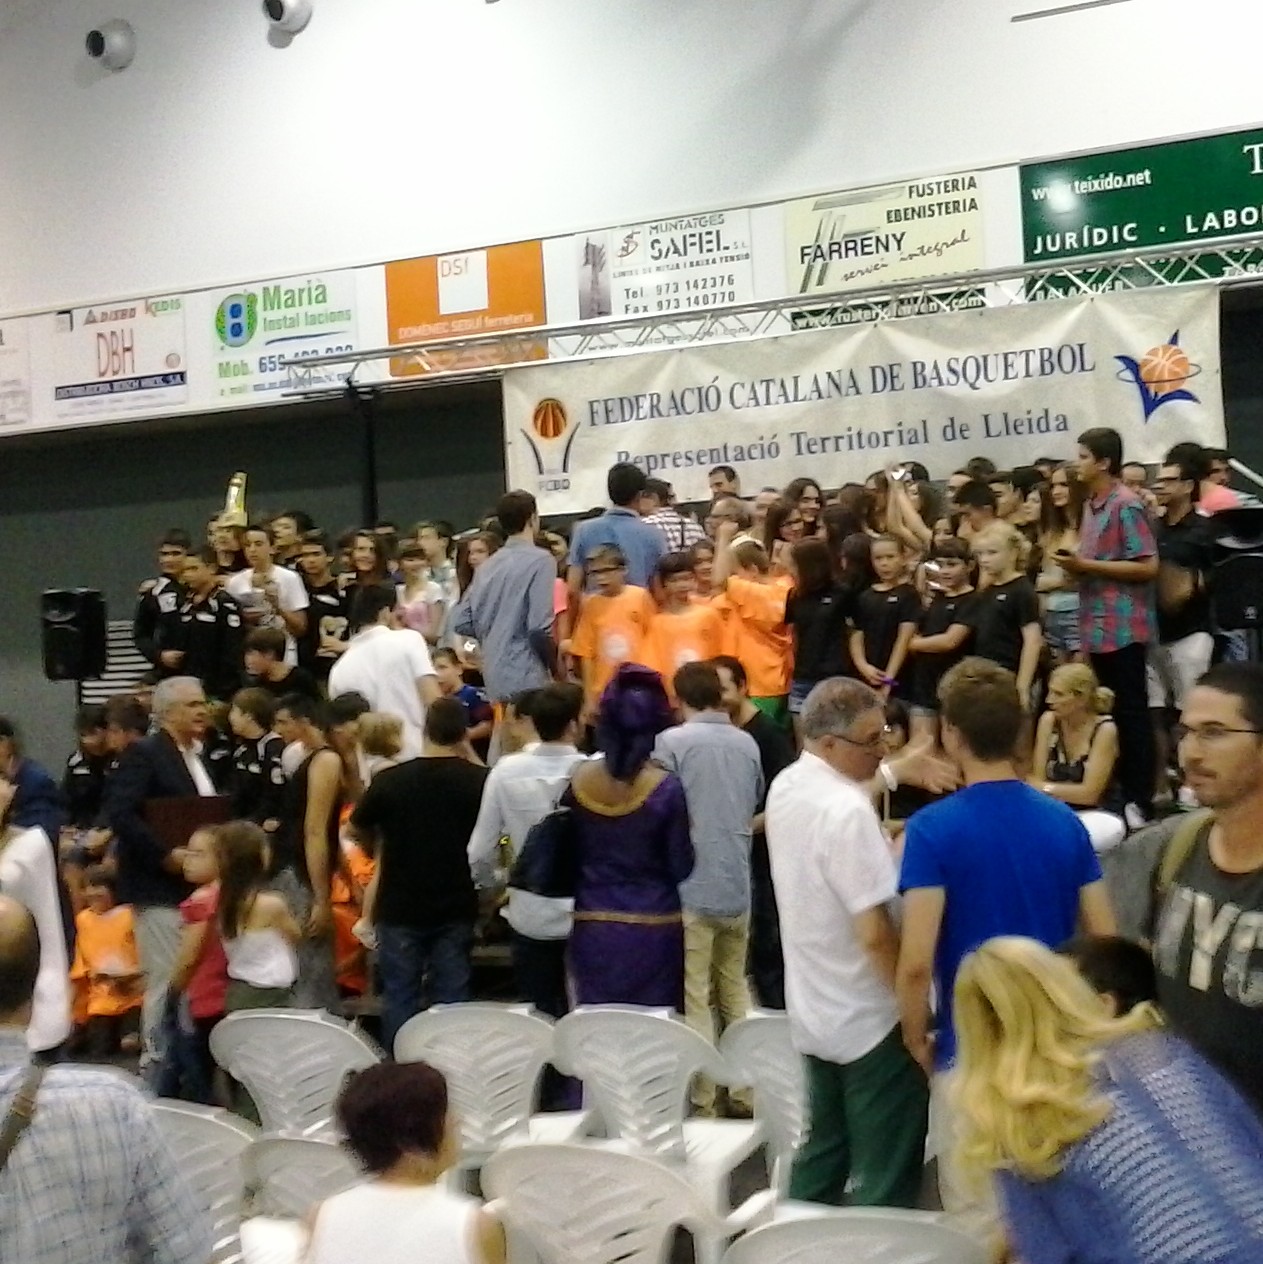 Festa del Bàsquet Lleidata 2013-2014 a Tàrrega.